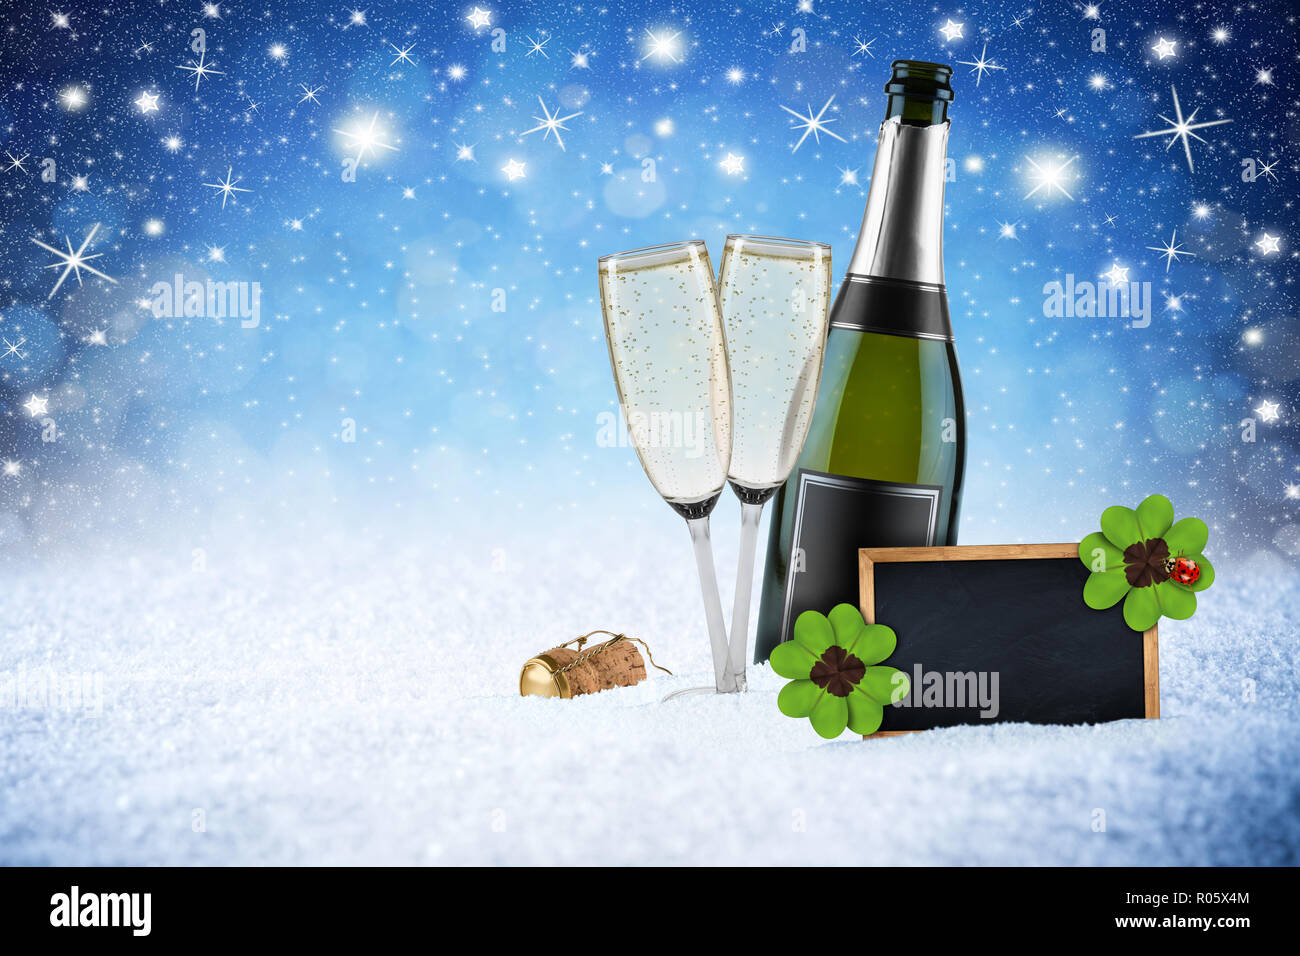 Felice anno nuovo blu ghiaccio neve notte stelle del cielo sfondo bokeh champagne bottiglia di vetro sughero lavagna vuota il design pattern biglietto di auguri Foto Stock